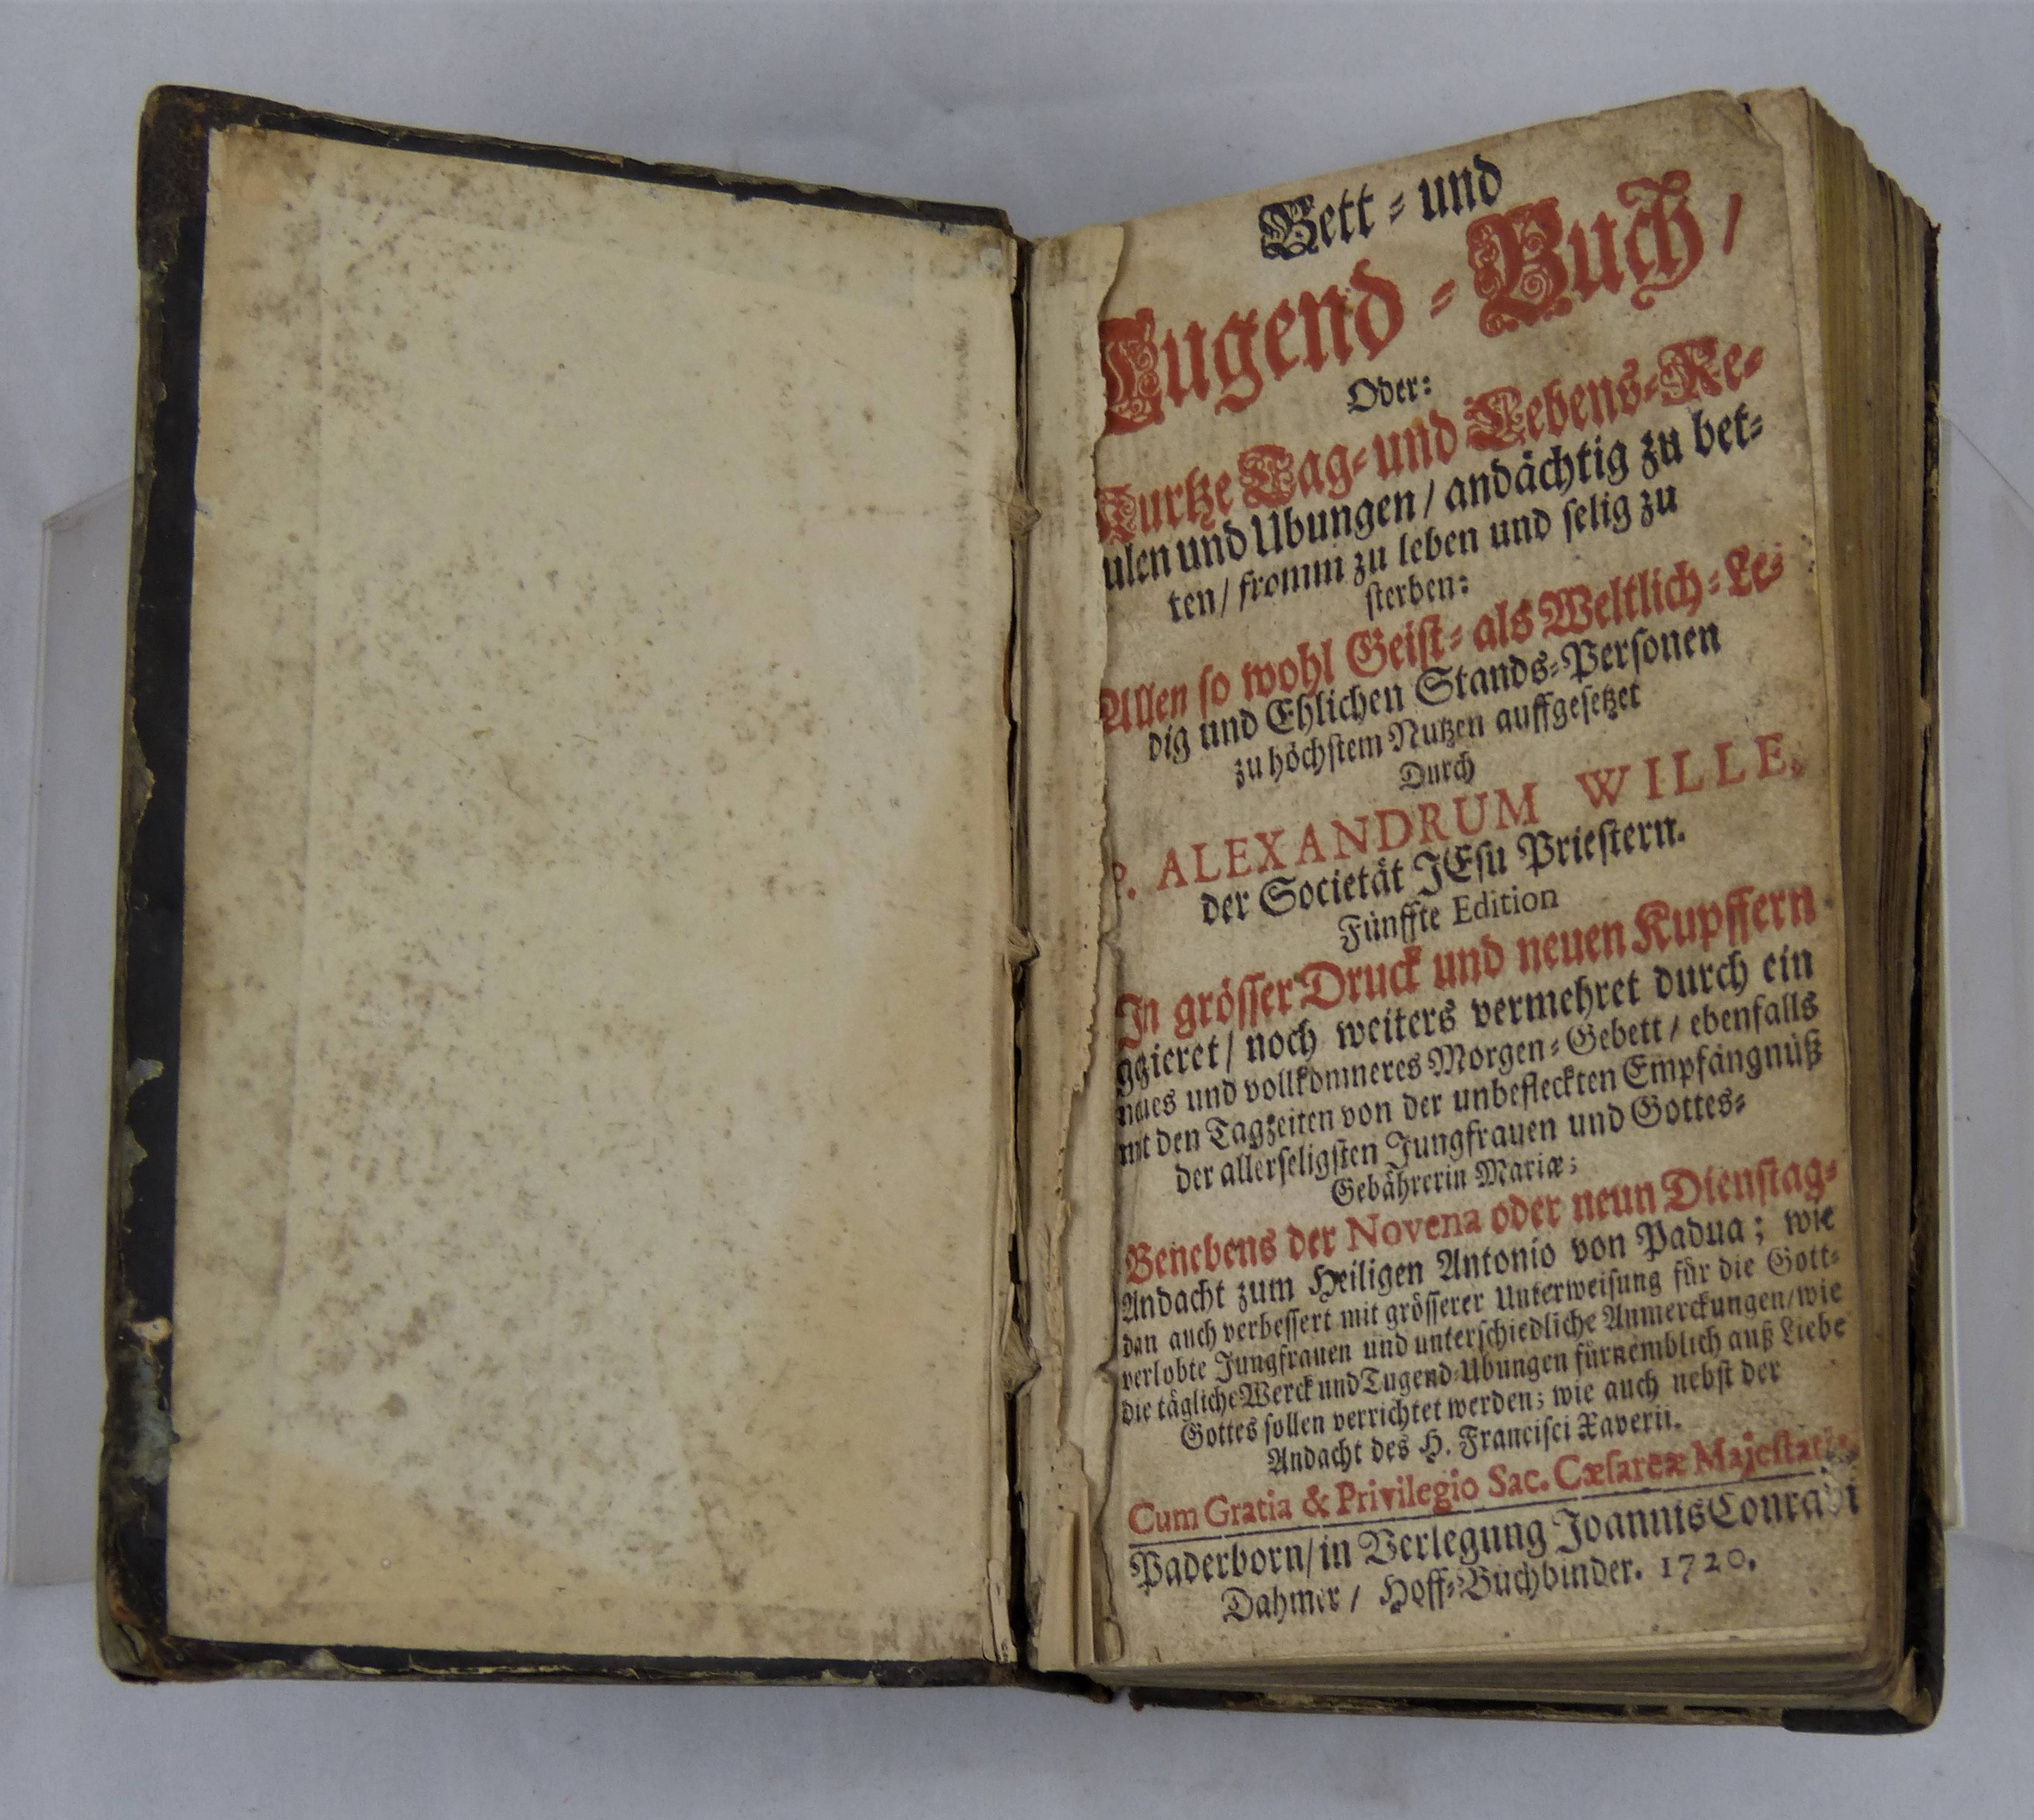 Buch "Bett= und Jugend=Buch" von 1720 (Städt. Hellweg-Museum Geseke CC BY-NC-SA)